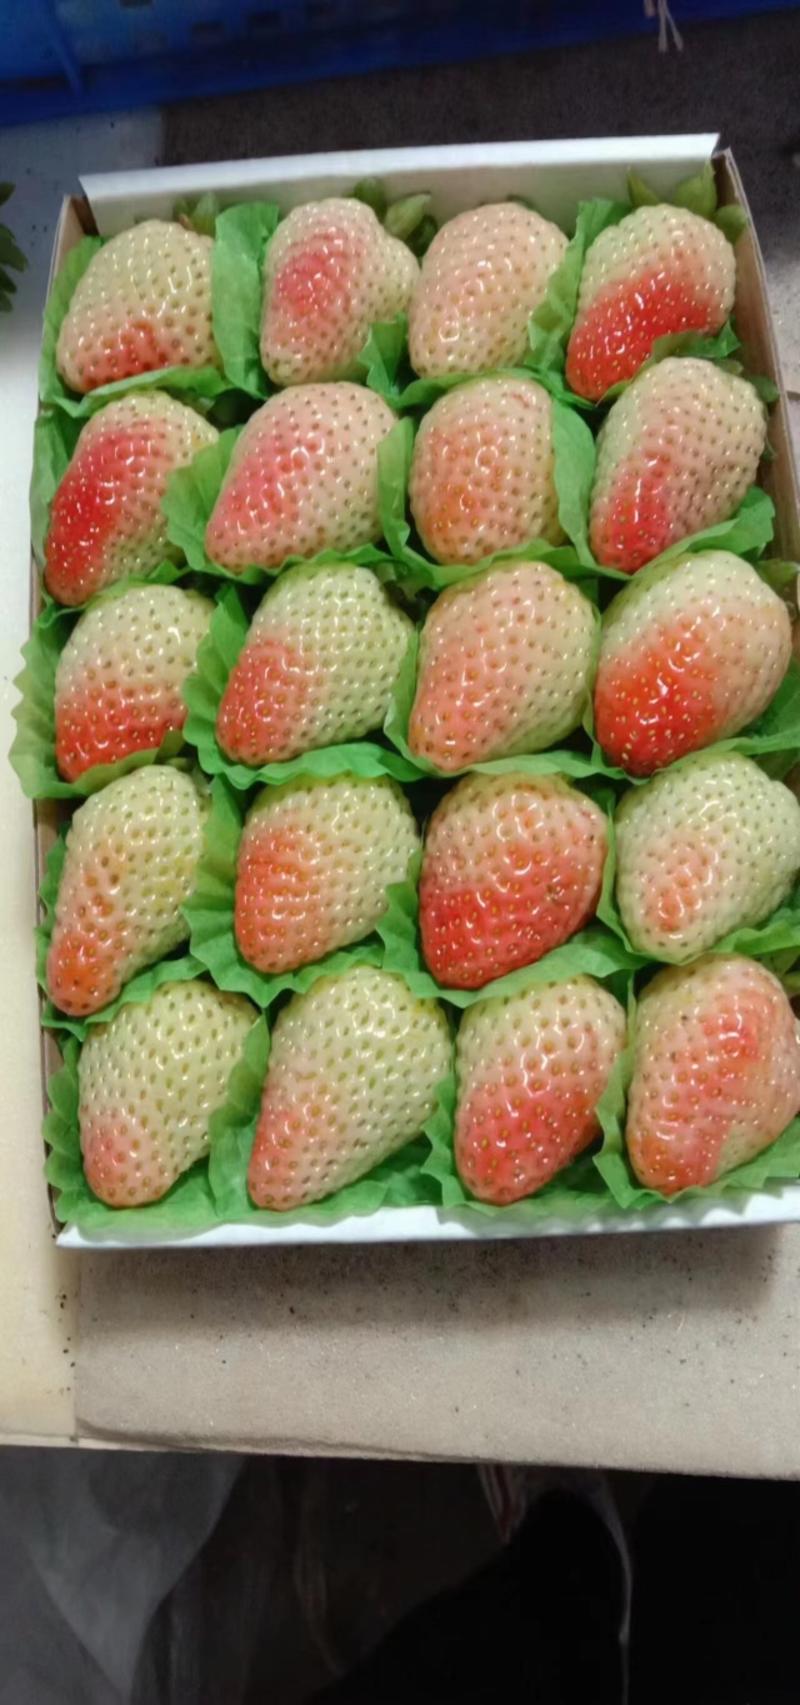 蒙特瑞草莓，基地直供全国直发商超电商一键代发欢迎洽谈生意